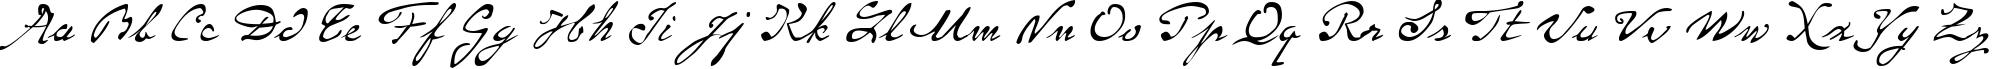 Пример написания английского алфавита шрифтом P22 Monet Regular